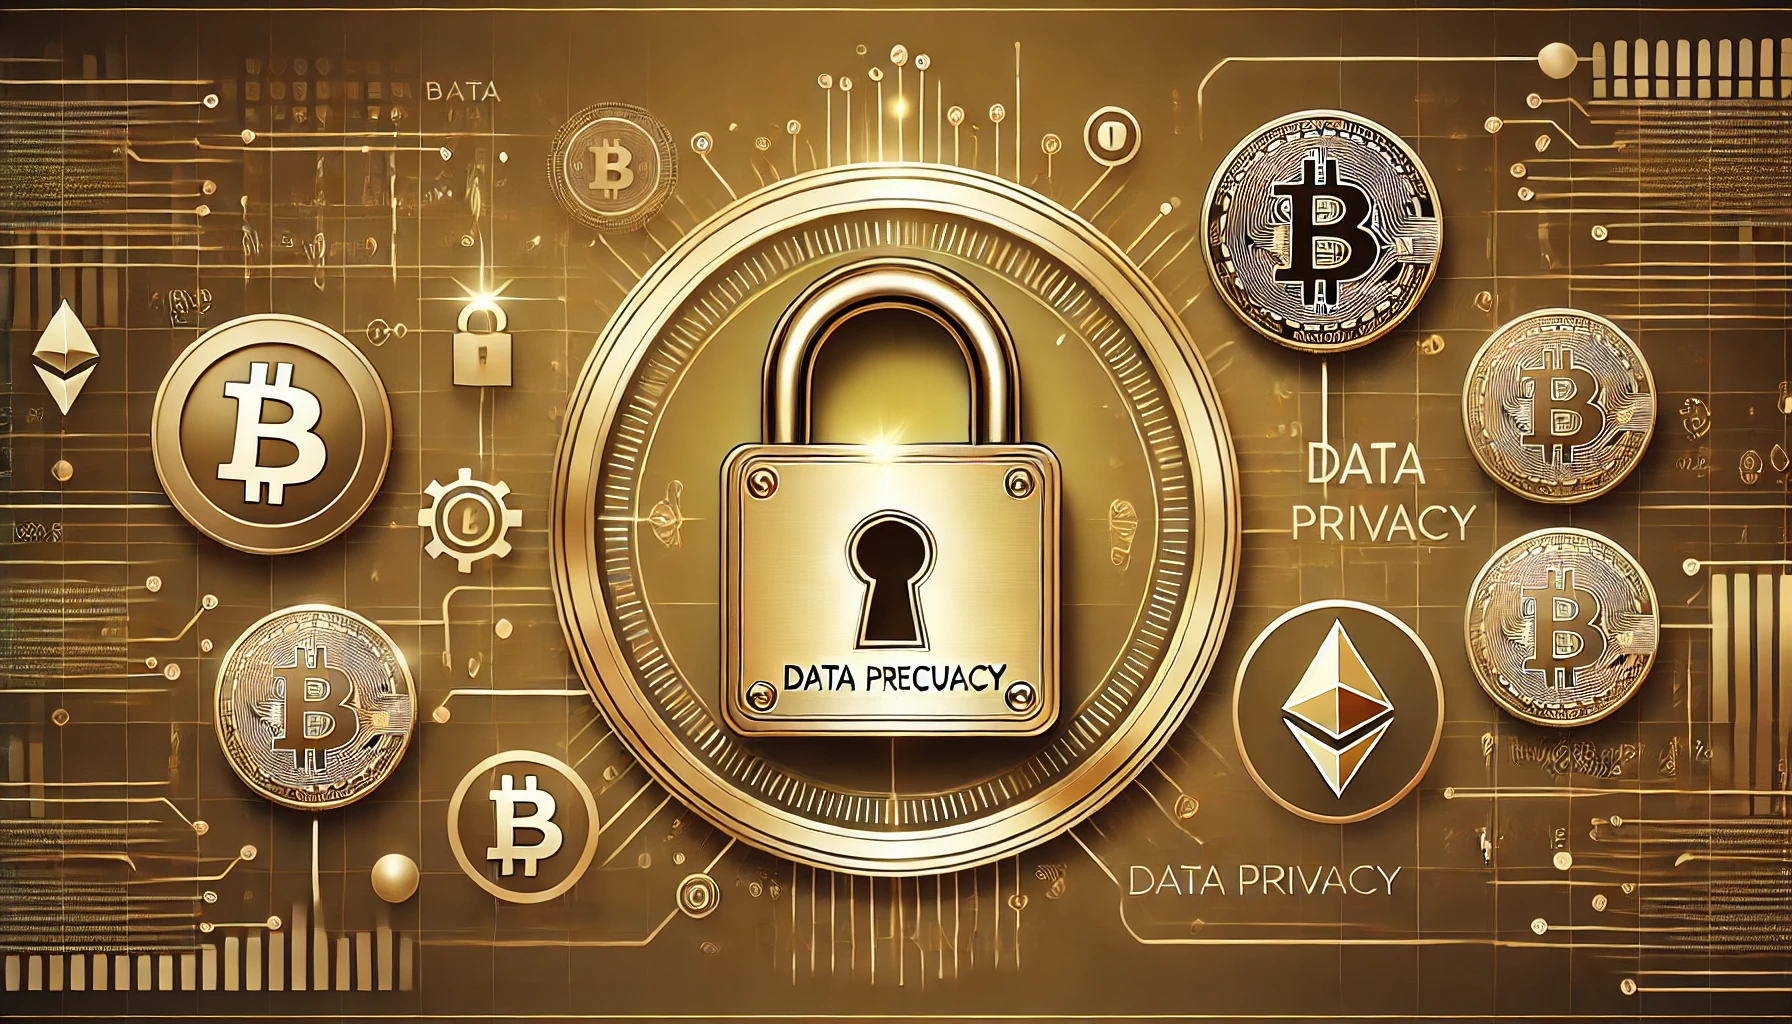 仮想通貨のデータプライバシーを象徴するデジタルロックとブロックチェーンアイコン、ビットコインとイーサリアムの要素が含まれた金色の背景画像。